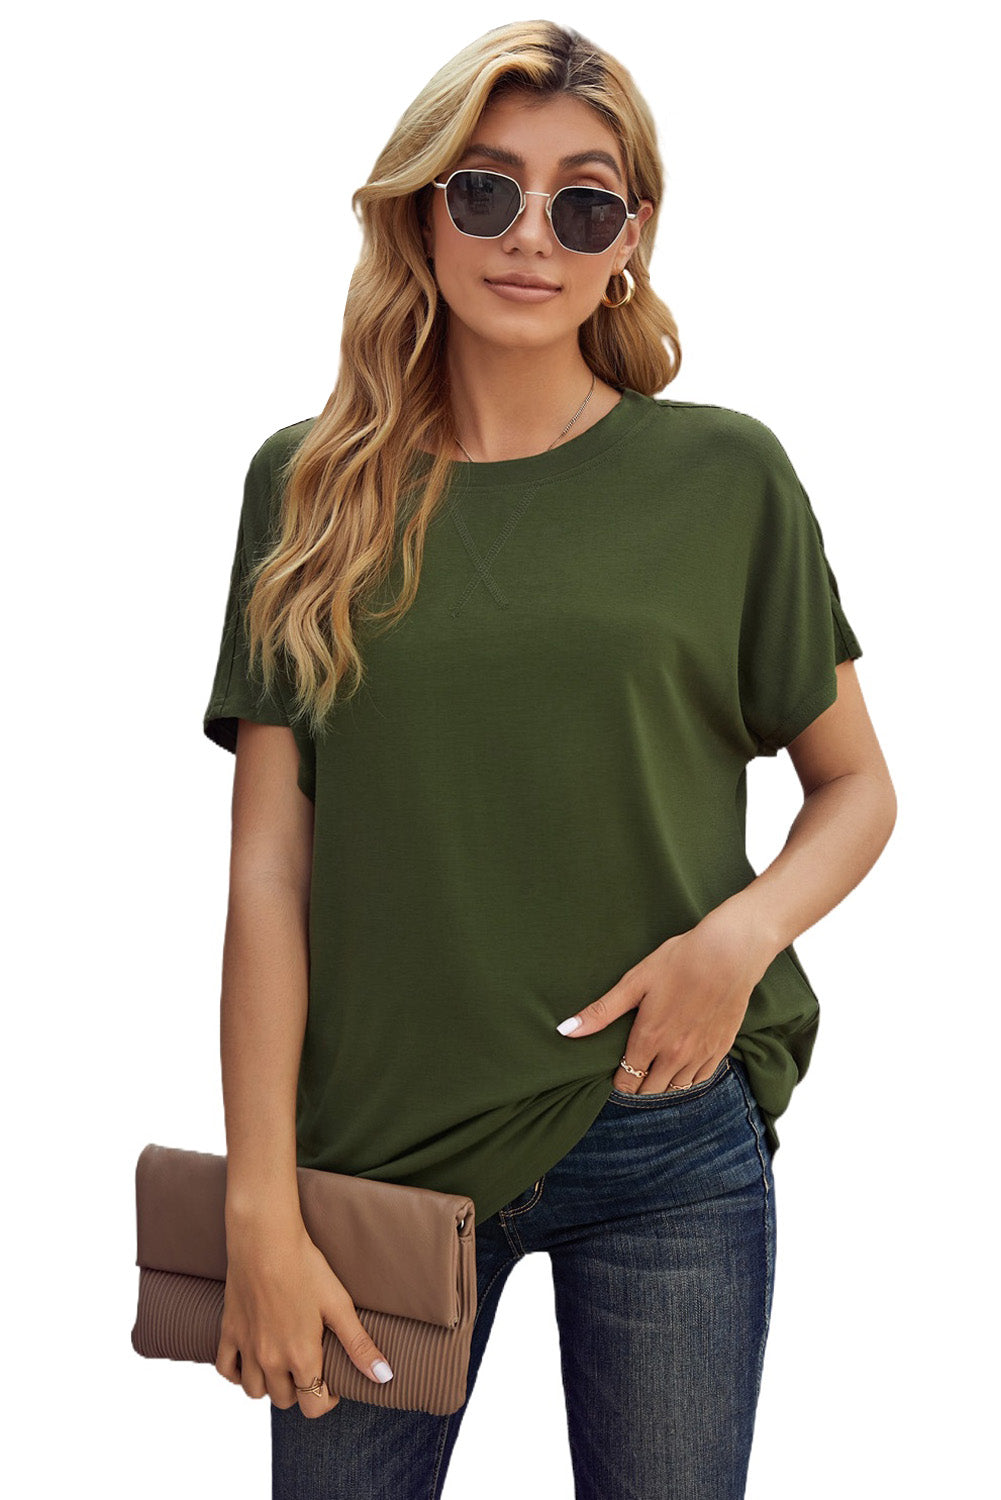 Grünes, kurzärmliges, einfarbiges T-Shirt mit Rundhalsausschnitt